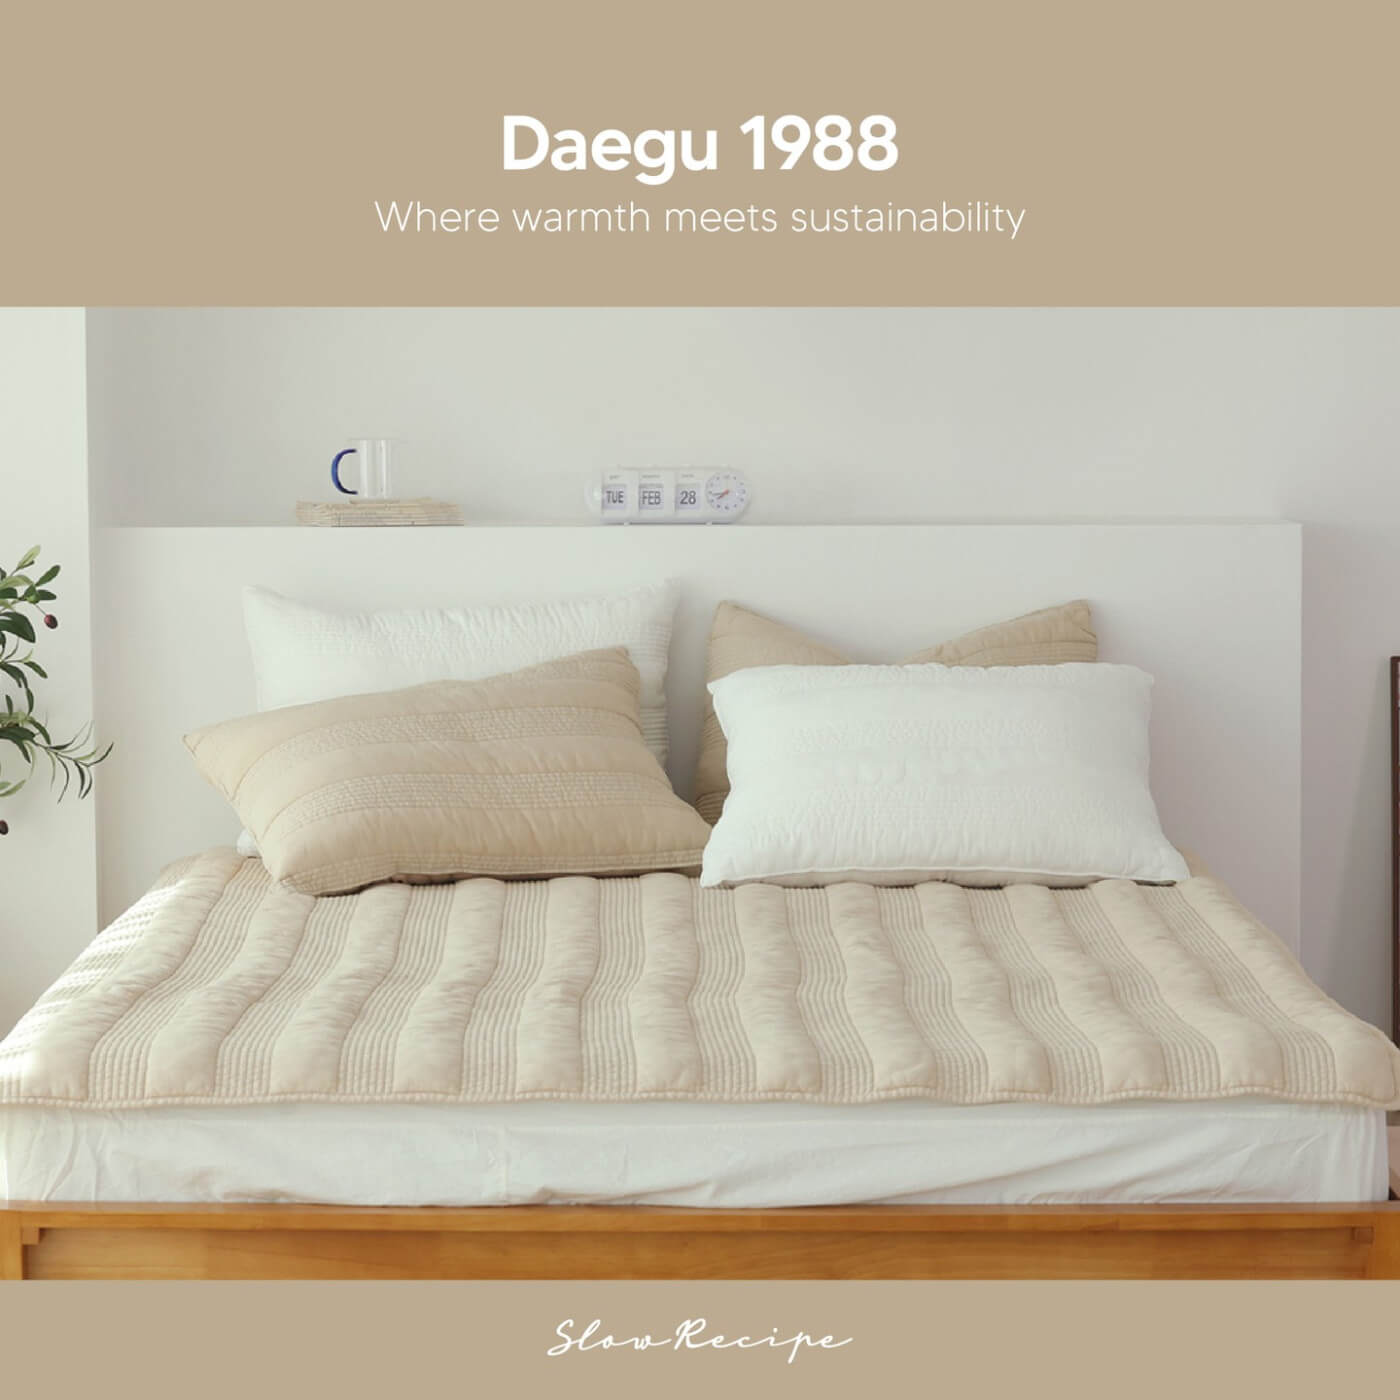 🌿 Embrace Cozy Sustainability this Season with Daegu 1988! 🌿